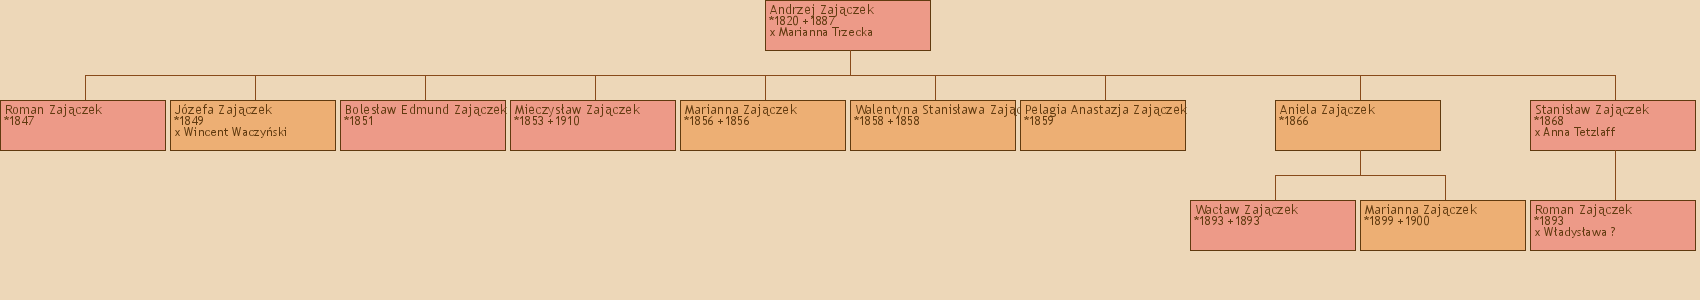 Drzewo genealogiczne - Andrzej Zajczek